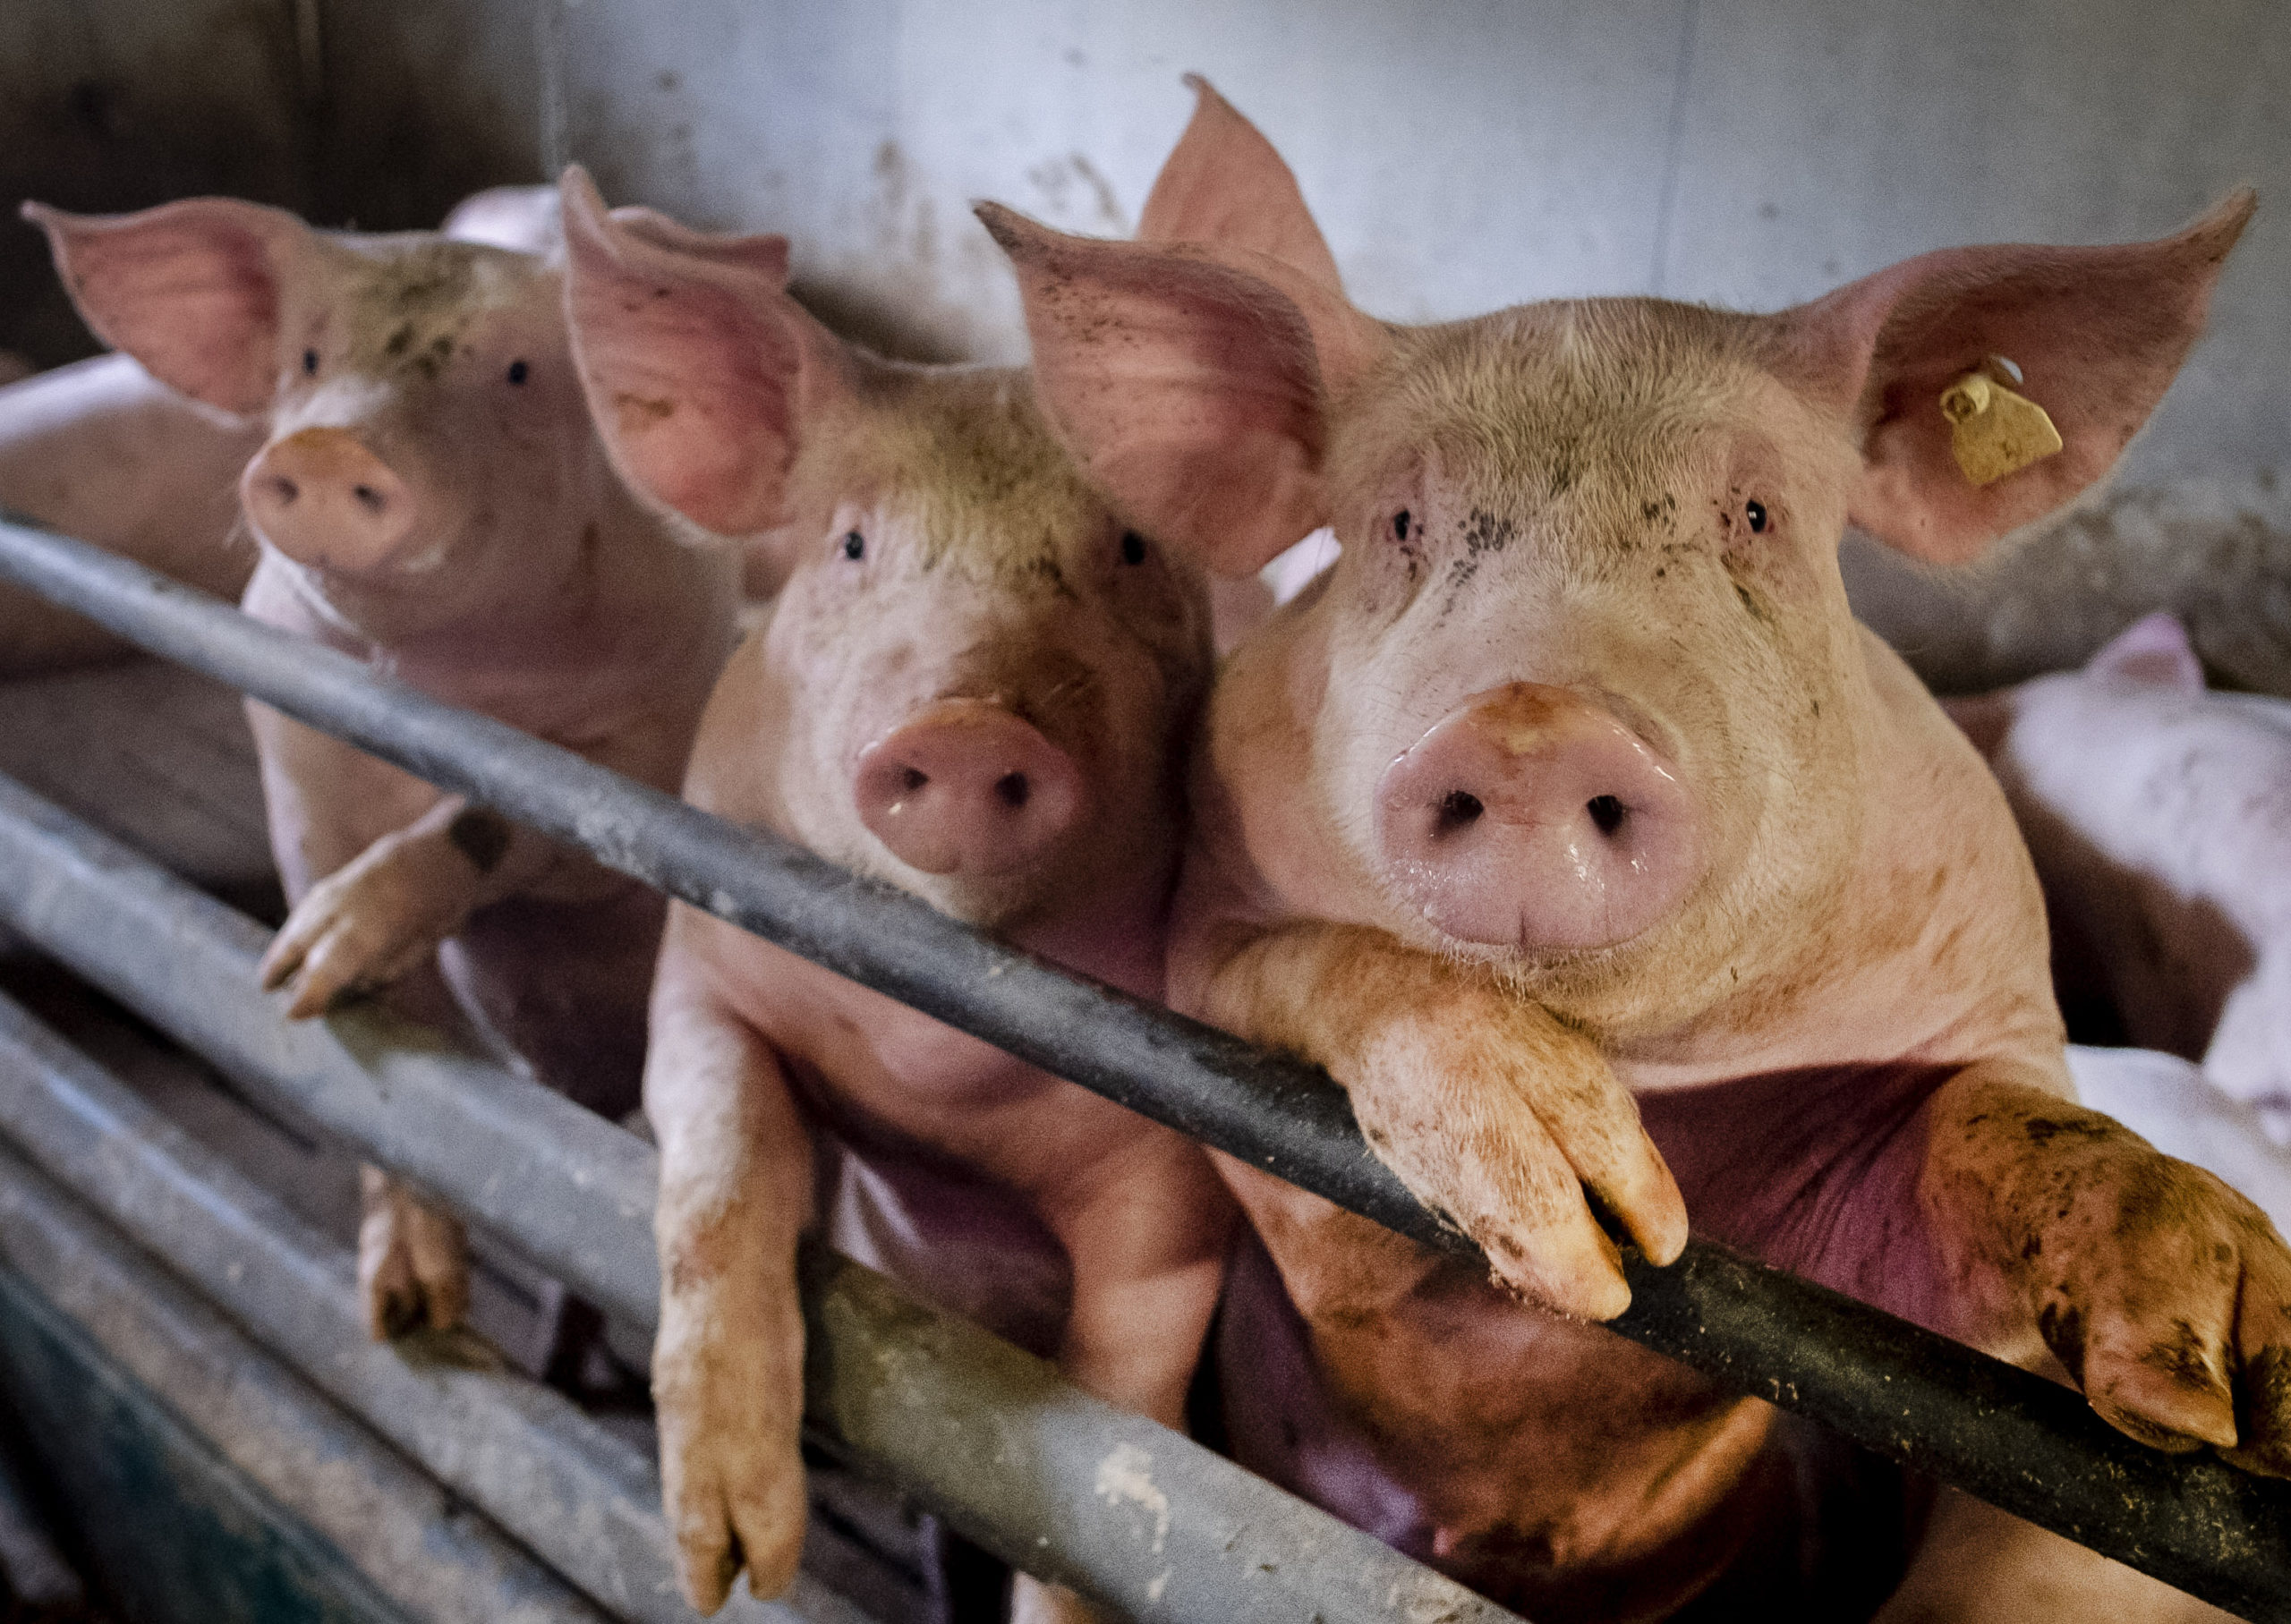 Científicos chinos alertan de una cepa de gripe porcina que podría transmitirse a humanos